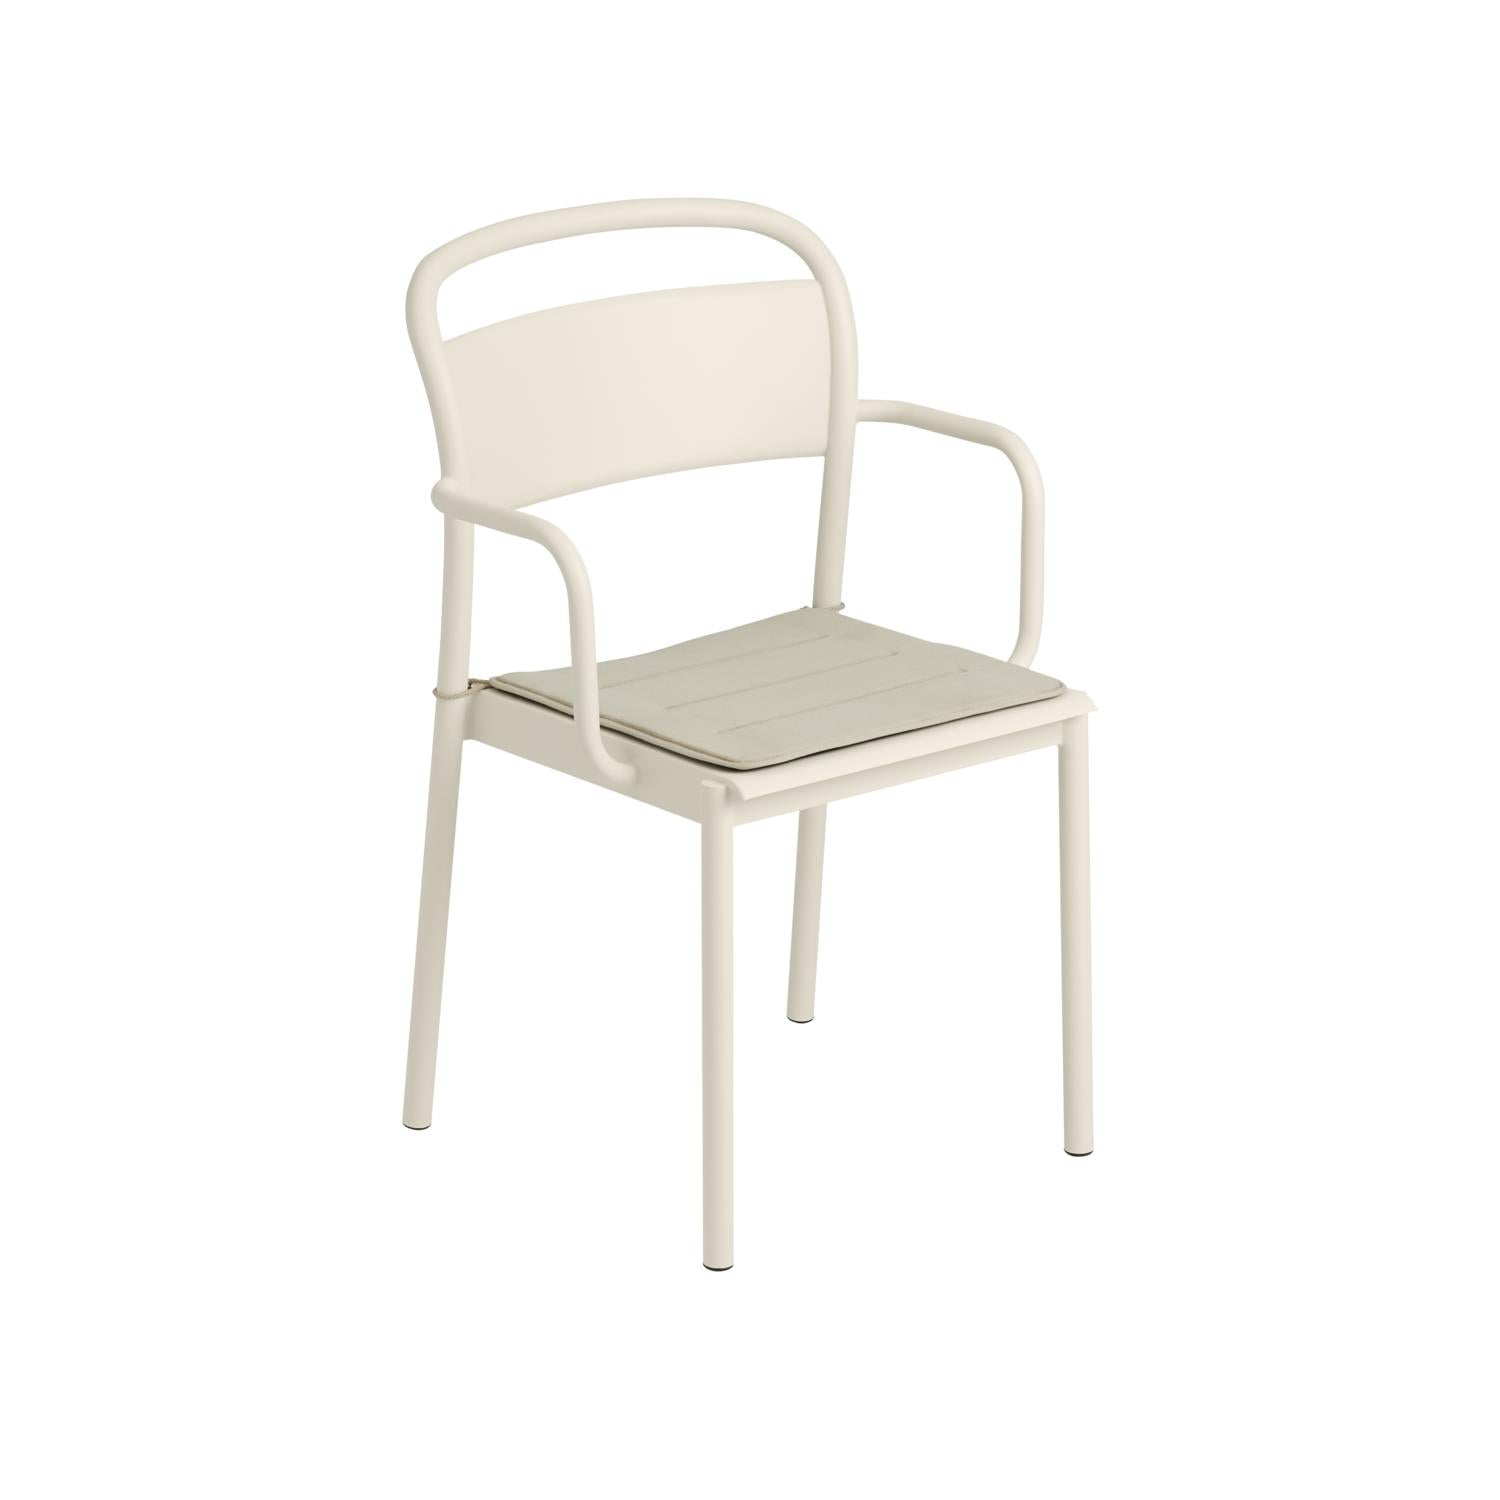 Muuto liniowy stalowy fotelik, z białym